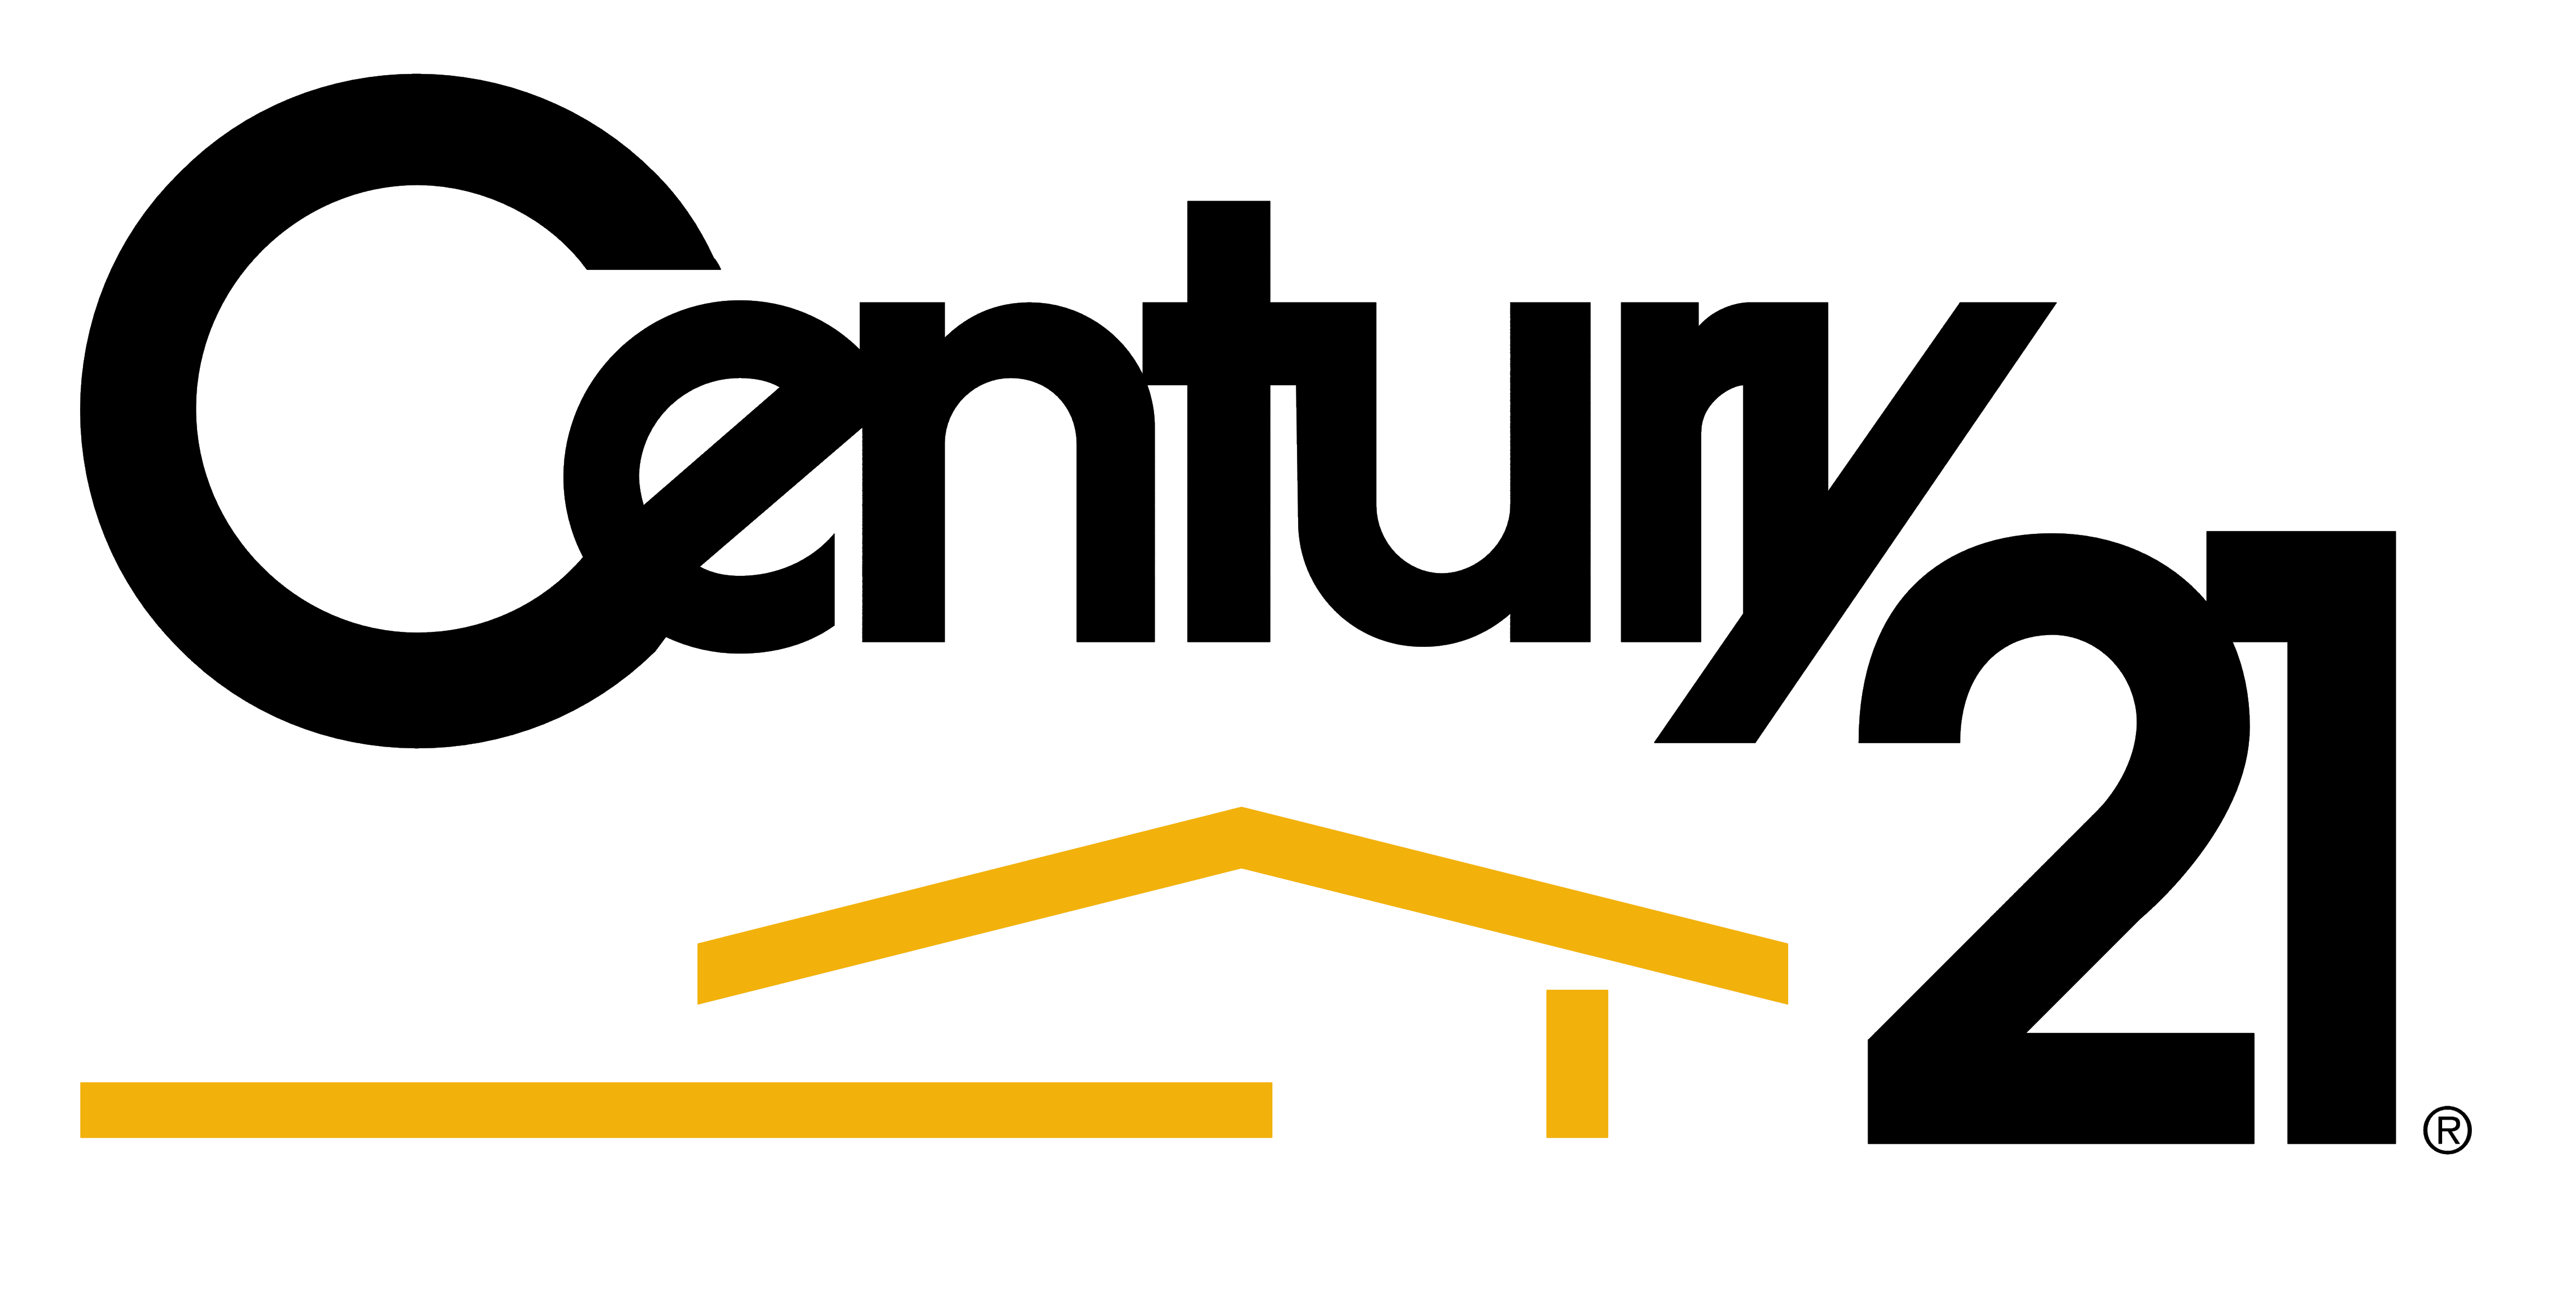 Century 21 (real estate) logo, logotype